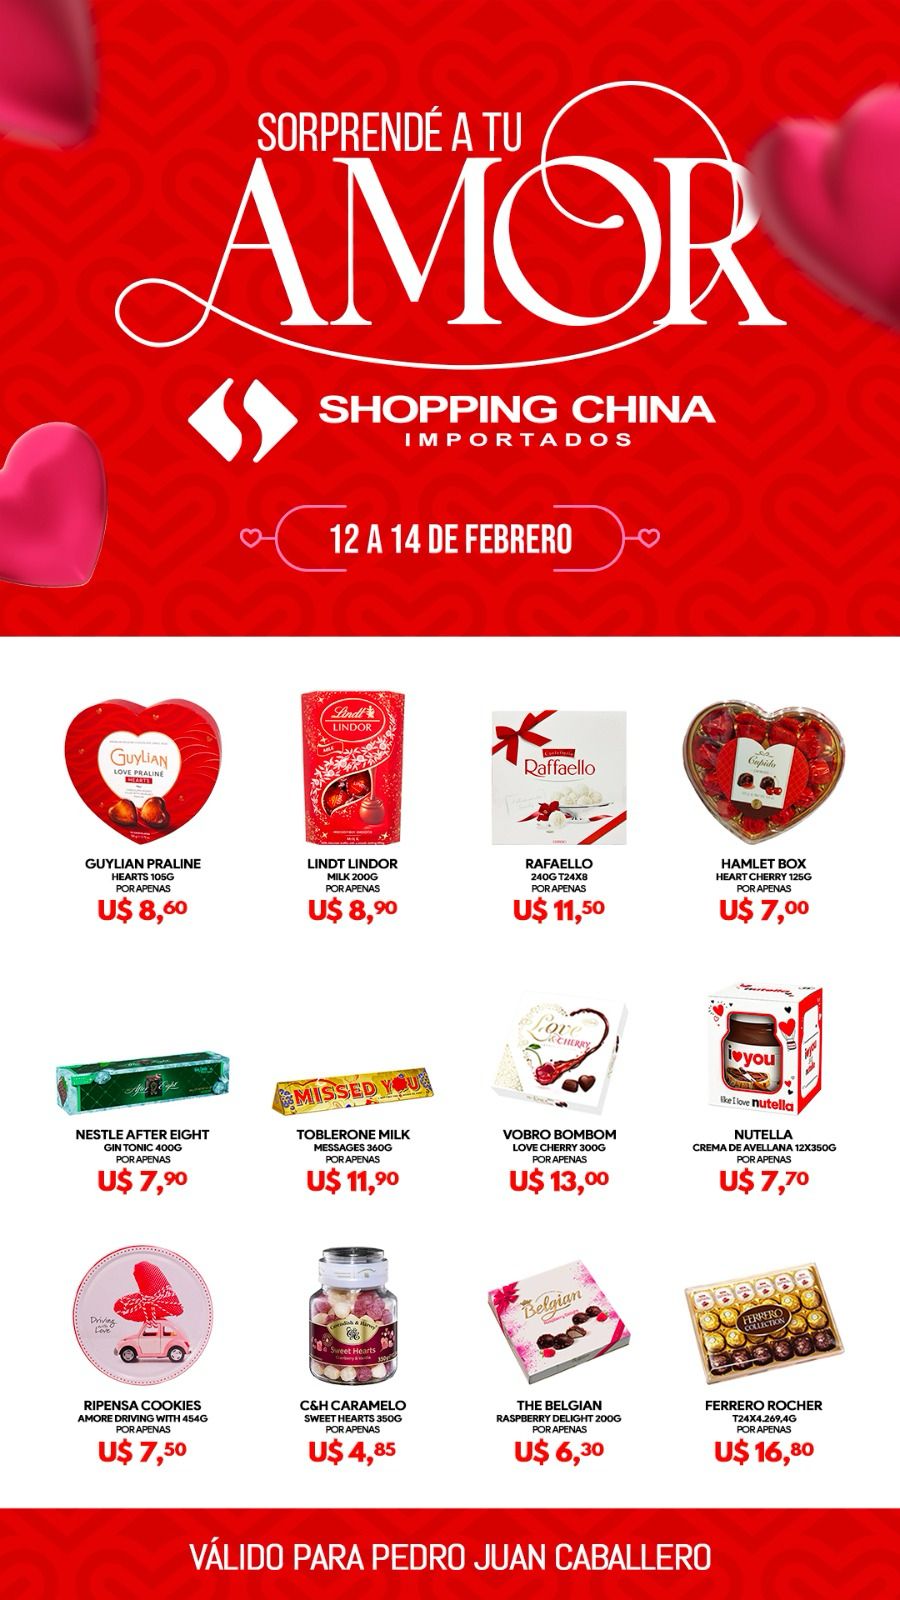 ¡Sorprendé a tu amor en grande este día de San Valentín con regalos de Shopping China!